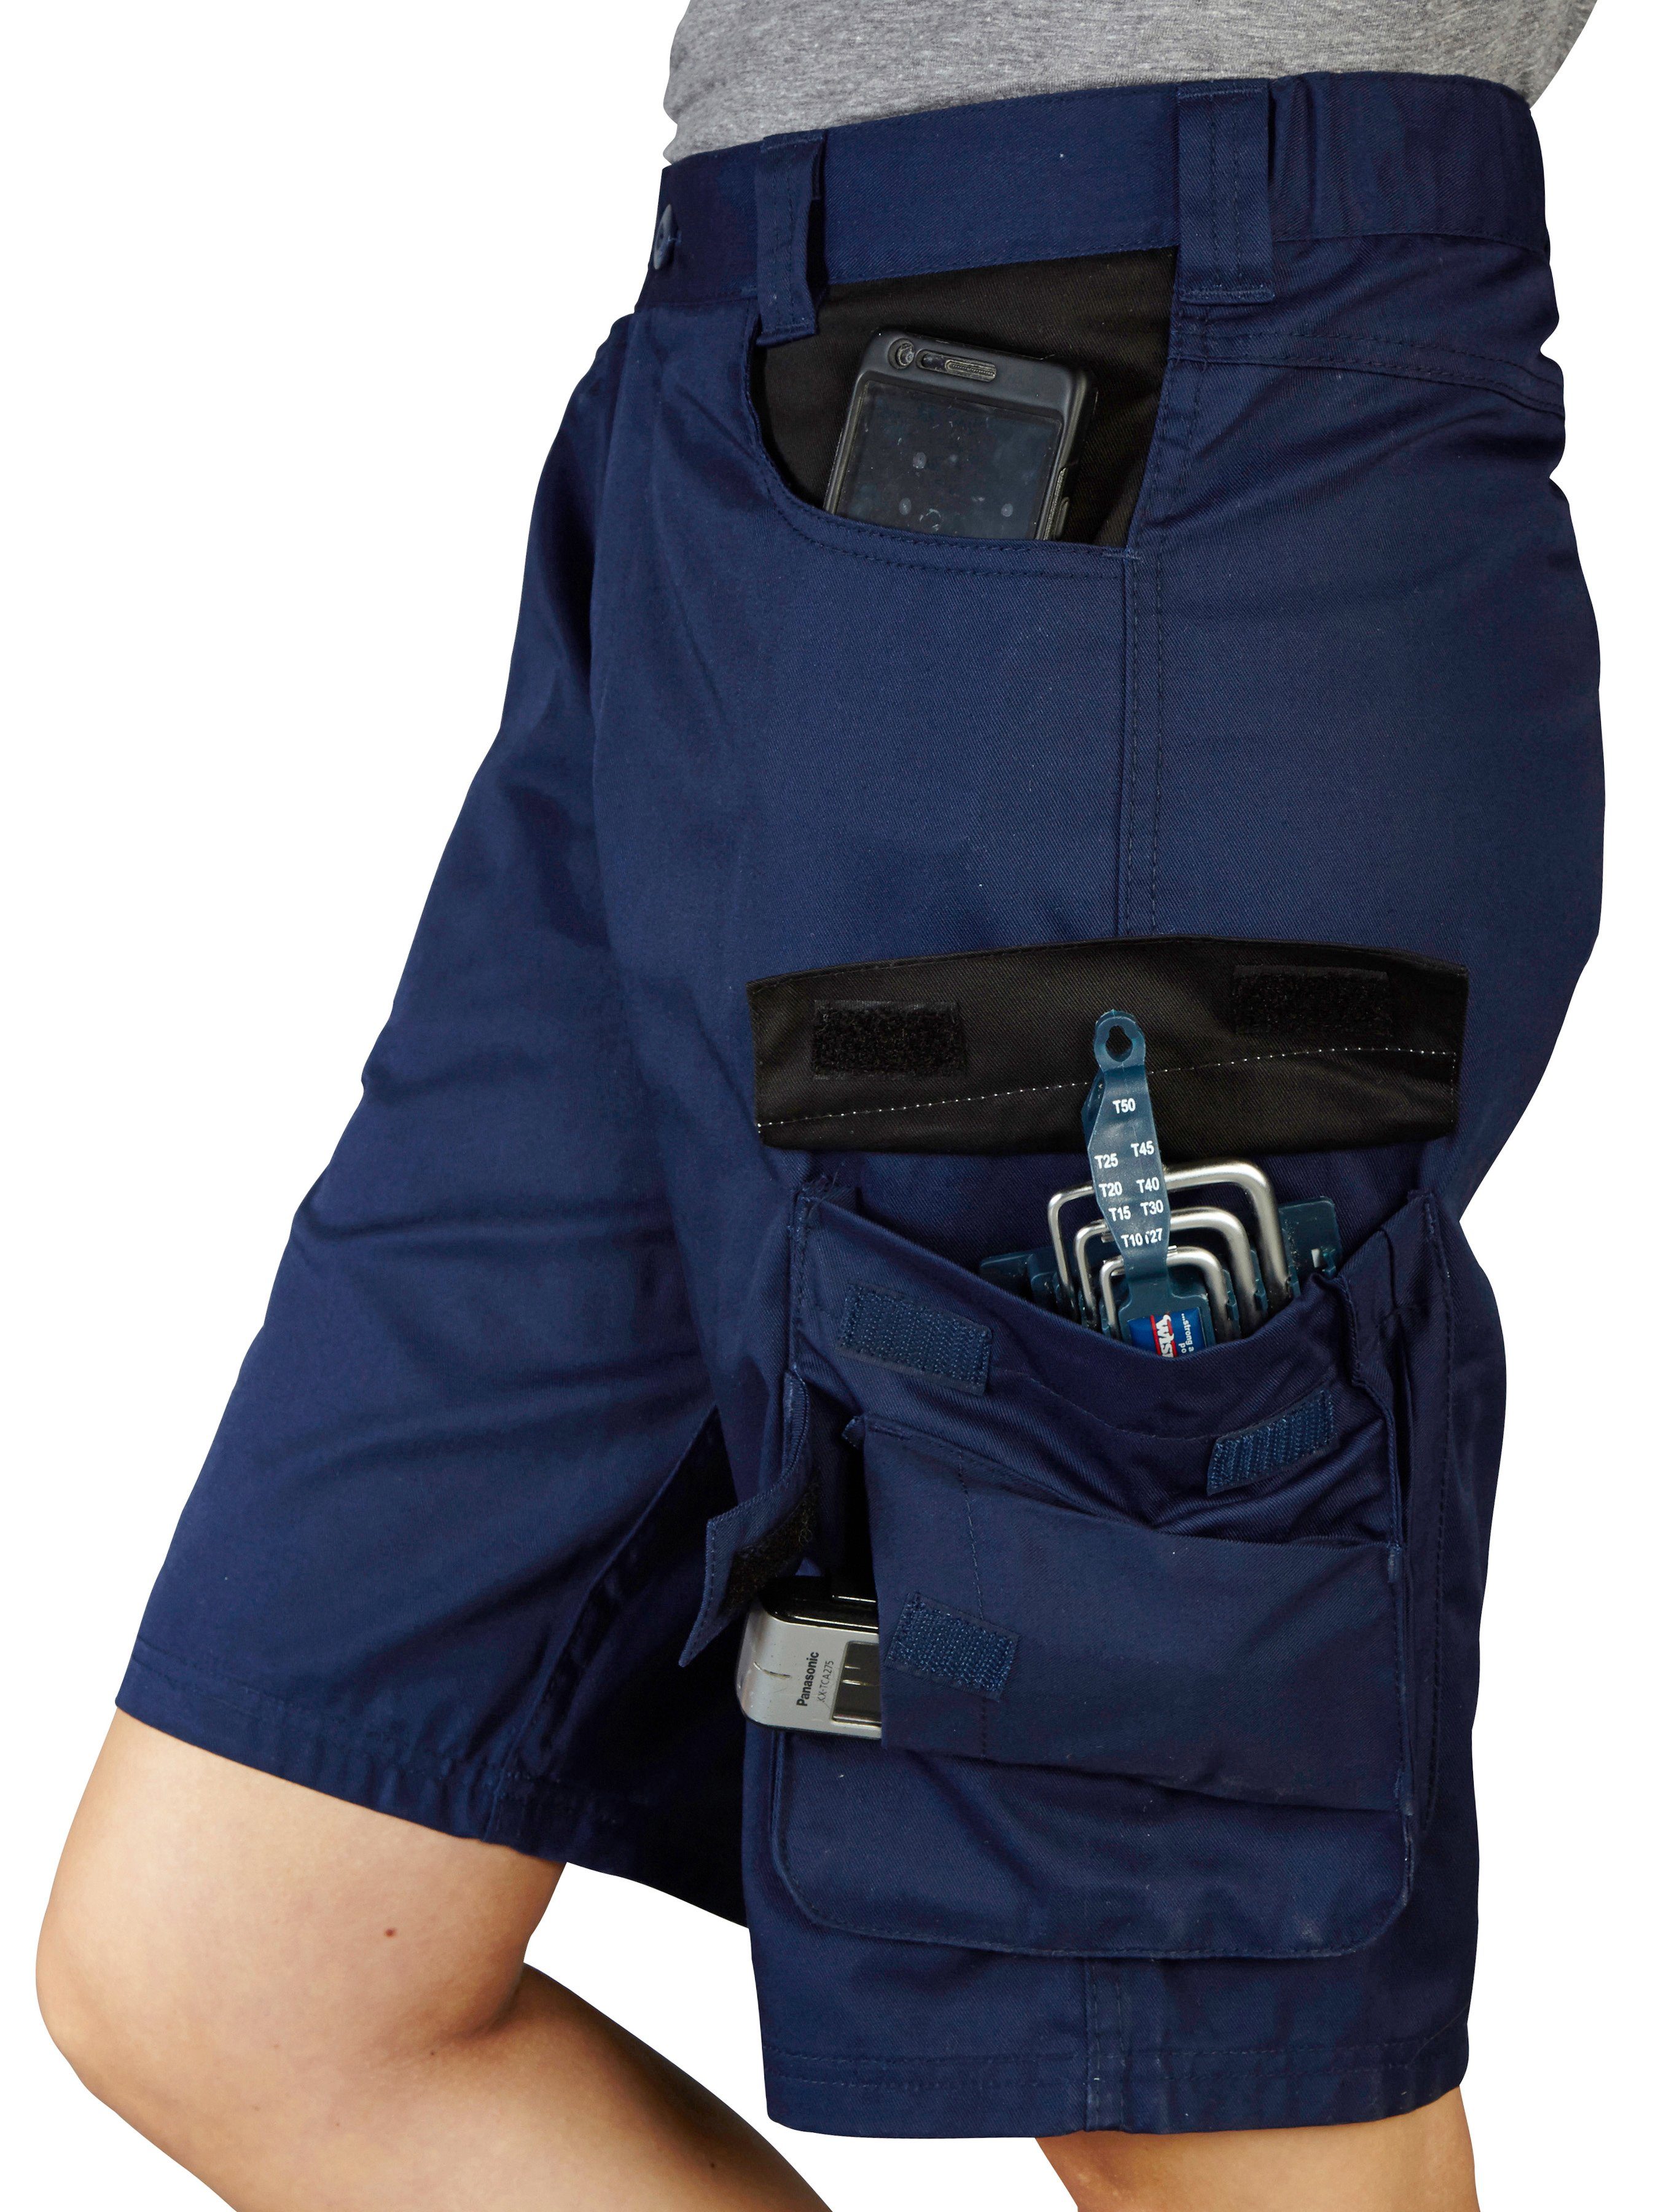 safety& more Arbeitsshorts Reflexeinsatz mar dunkelblau-schwarz Pull mit